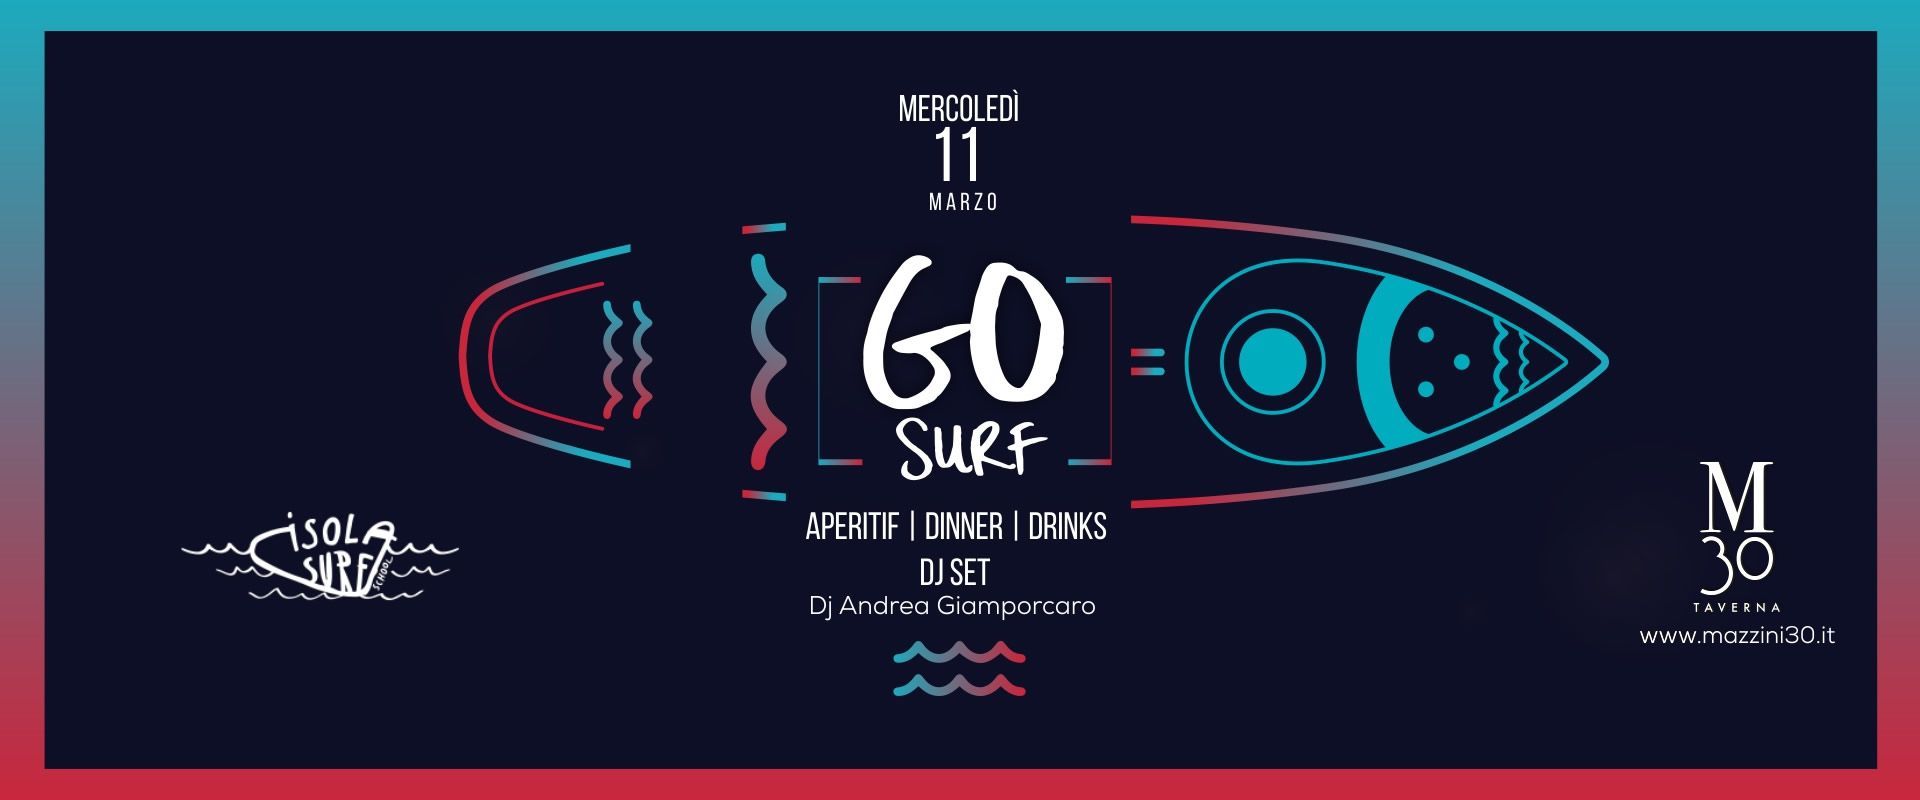 Evento rinviato - Go Surf Mercoled 11 Marzo